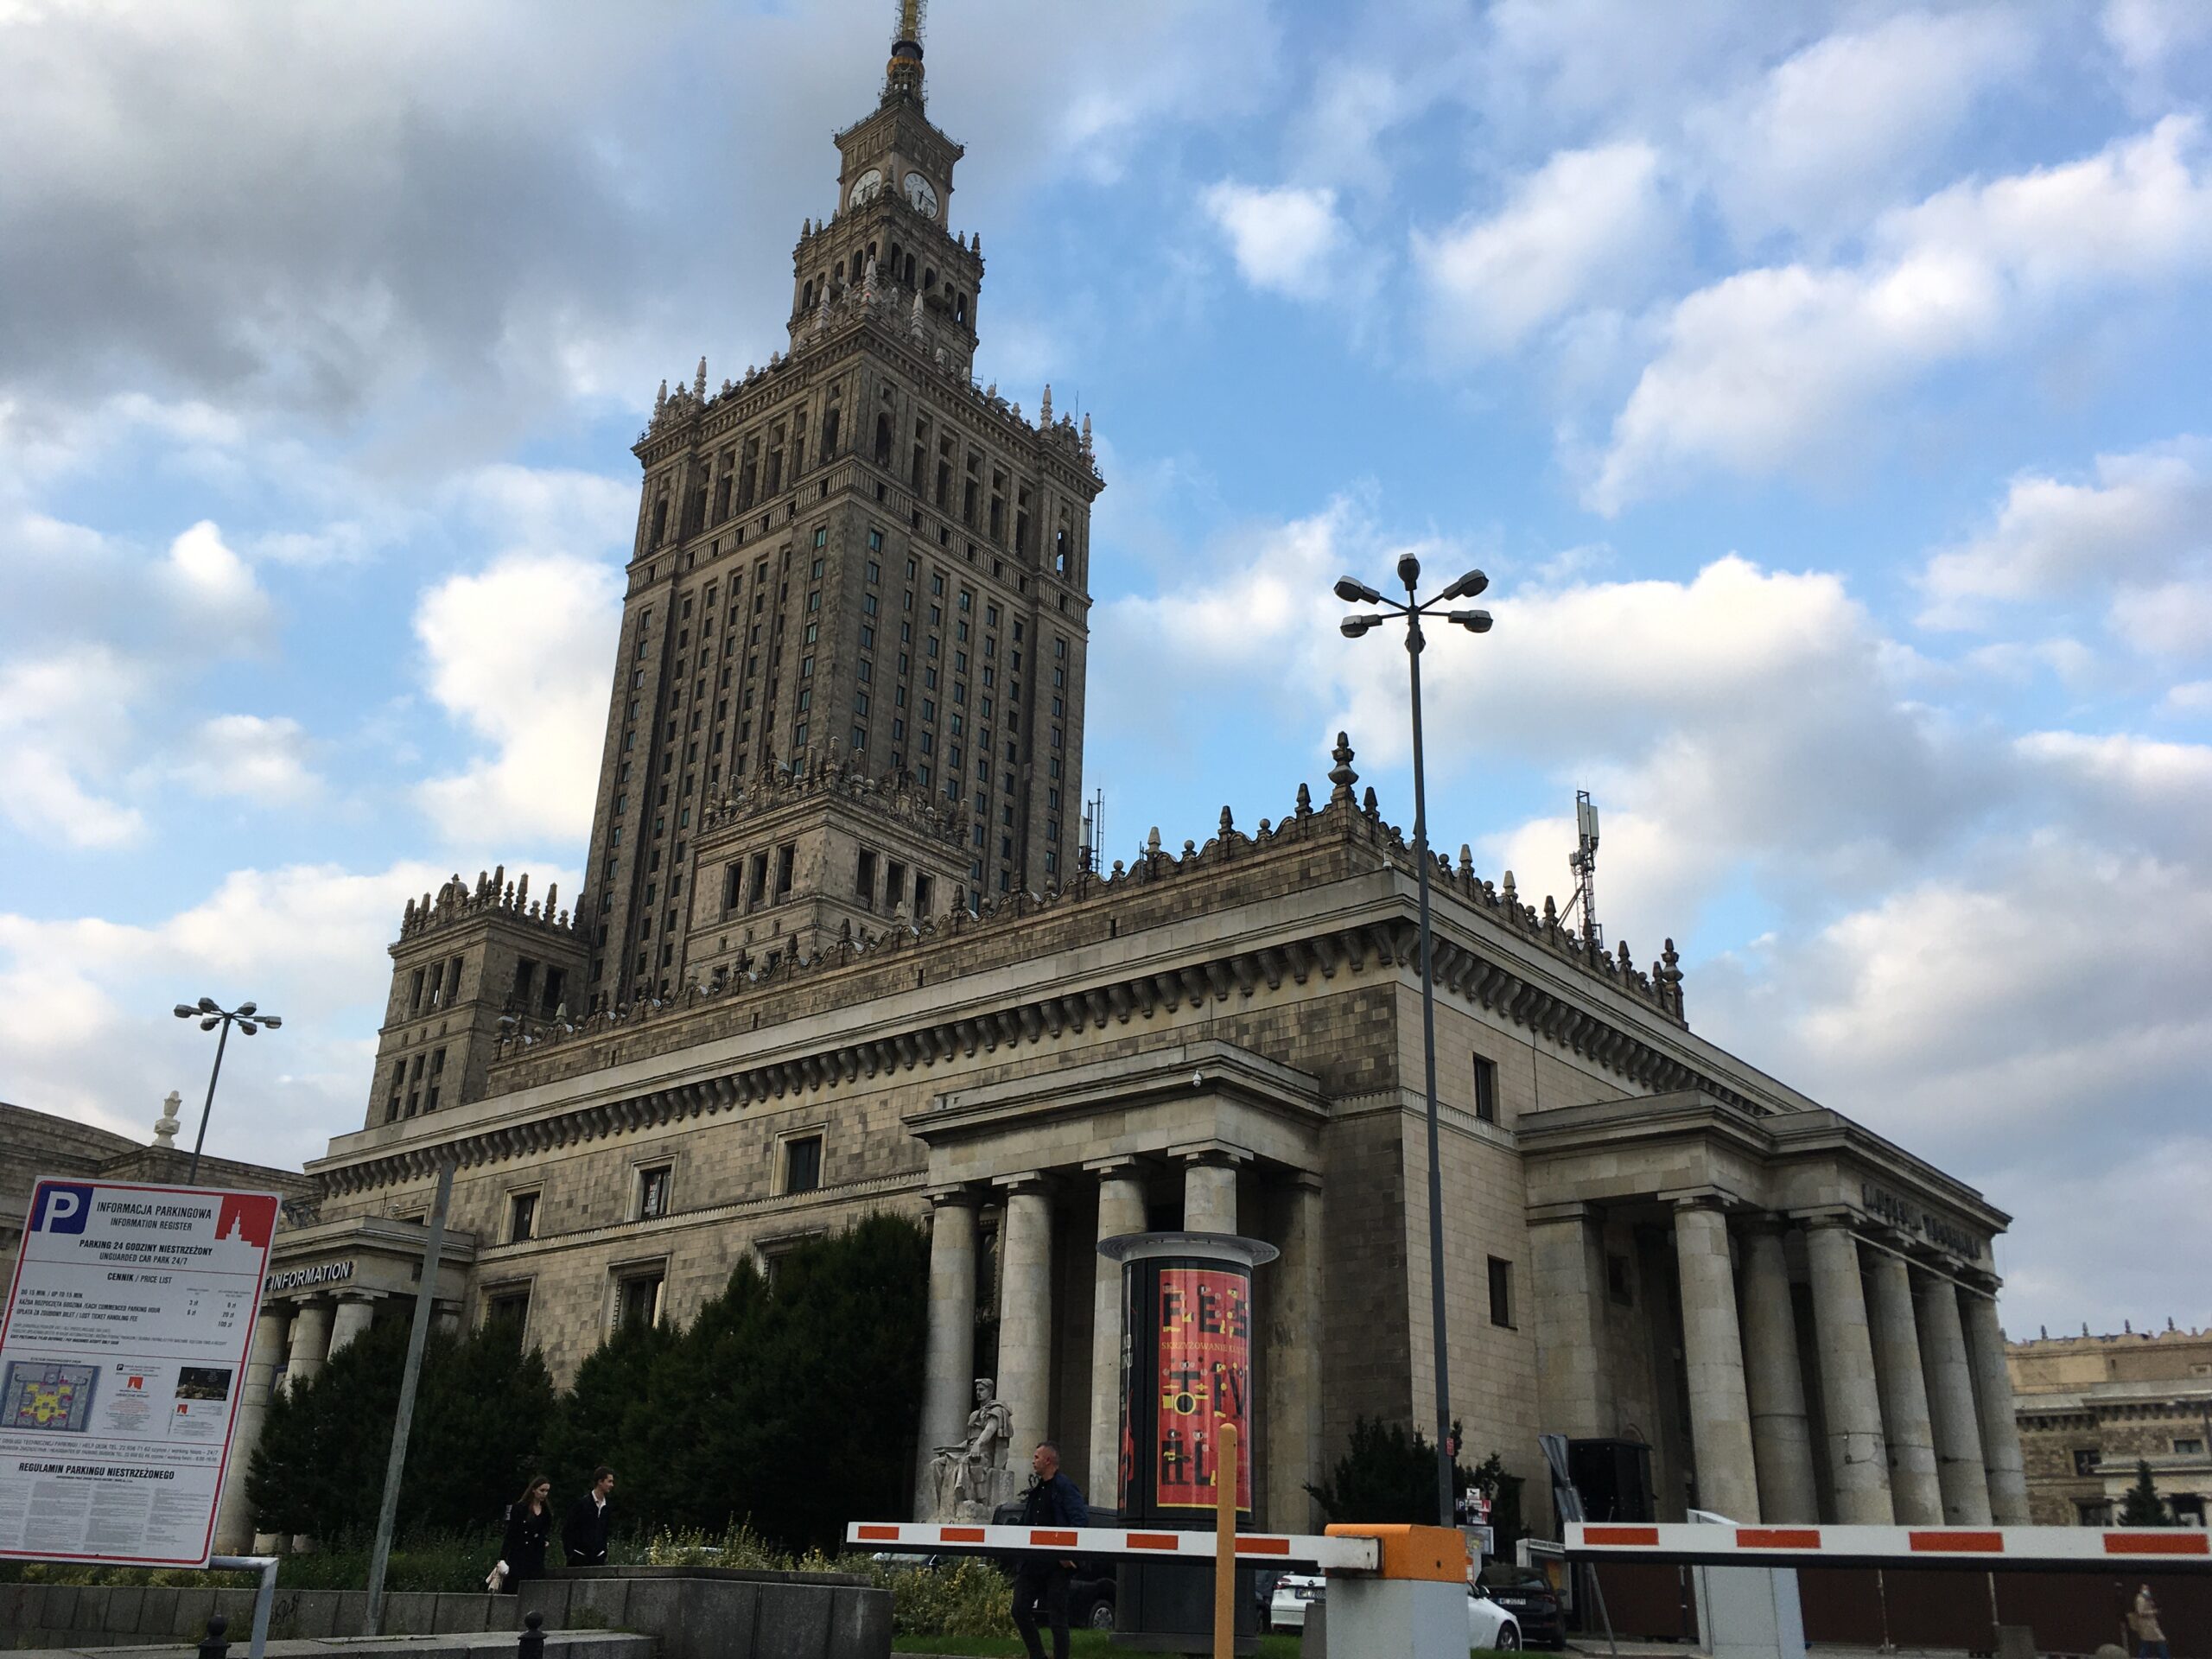 Pałac Kultury i Nauki w Warszawie - montaż pętli indukcyjnej w punkcie informacji turystycznej